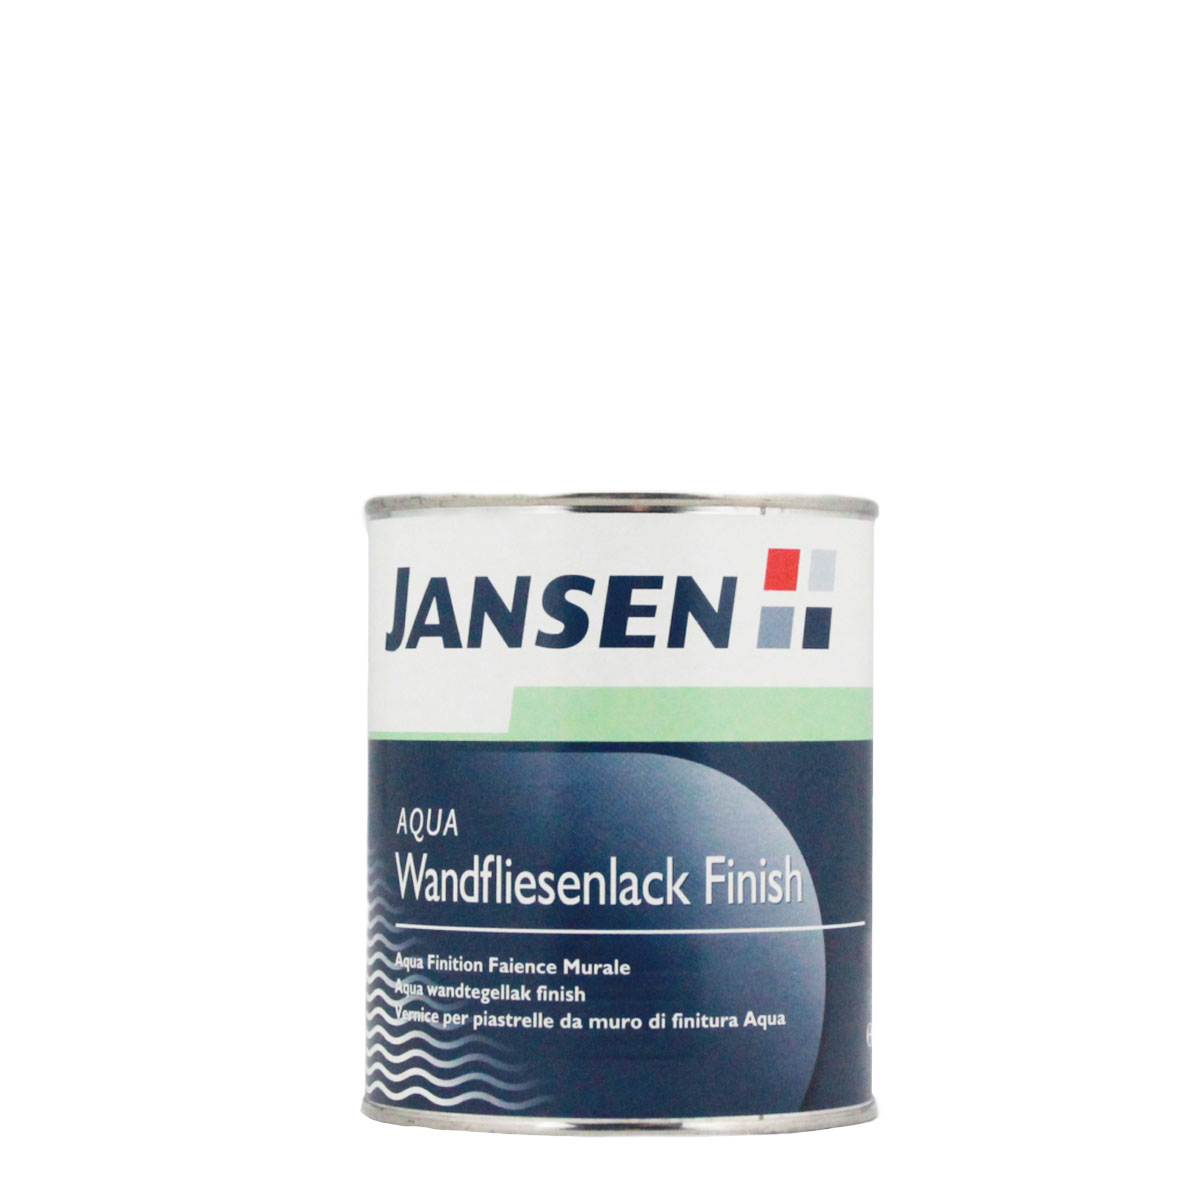 Jansen Aqua Wandfliesenlack Finish 0,75L ,seidenmatt, Fliesenlack